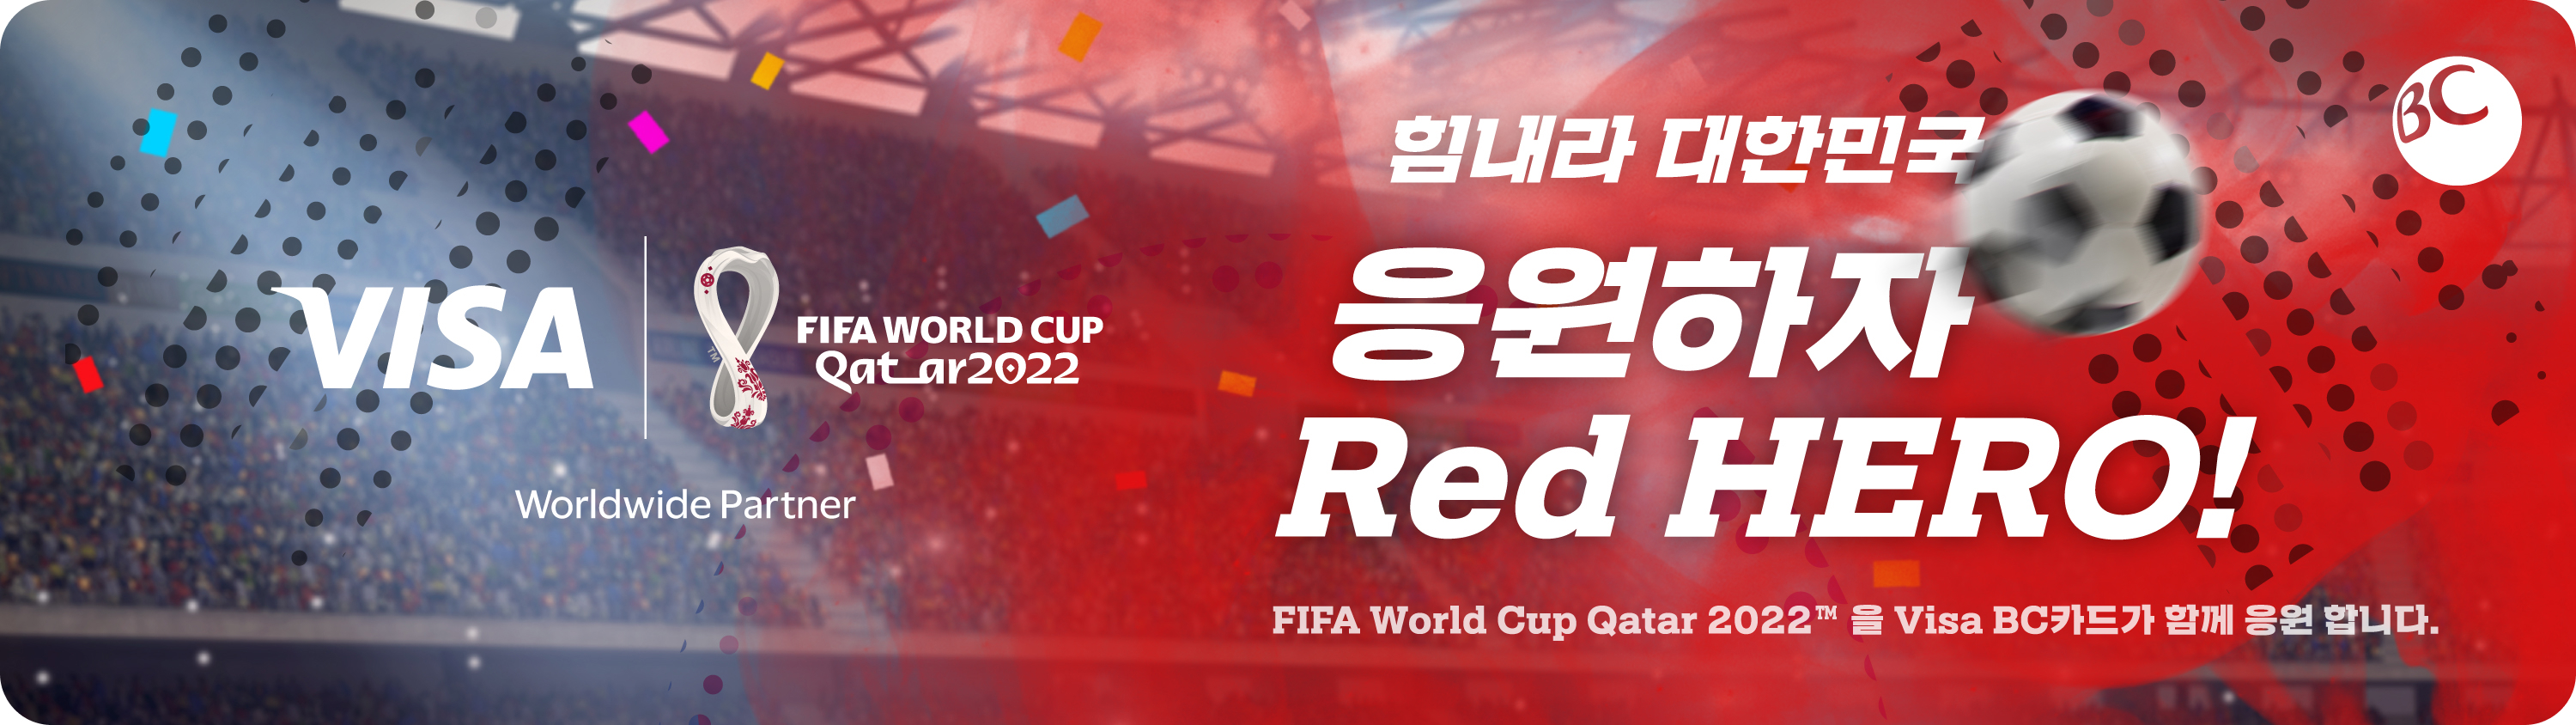 카타르월드컵 / 힘내라 대한민국 응원하자 Red HERO! FIFA World Cup Qatar 2022™ 을 Visa BC카드가 함게 응원 합니다. / BC카드